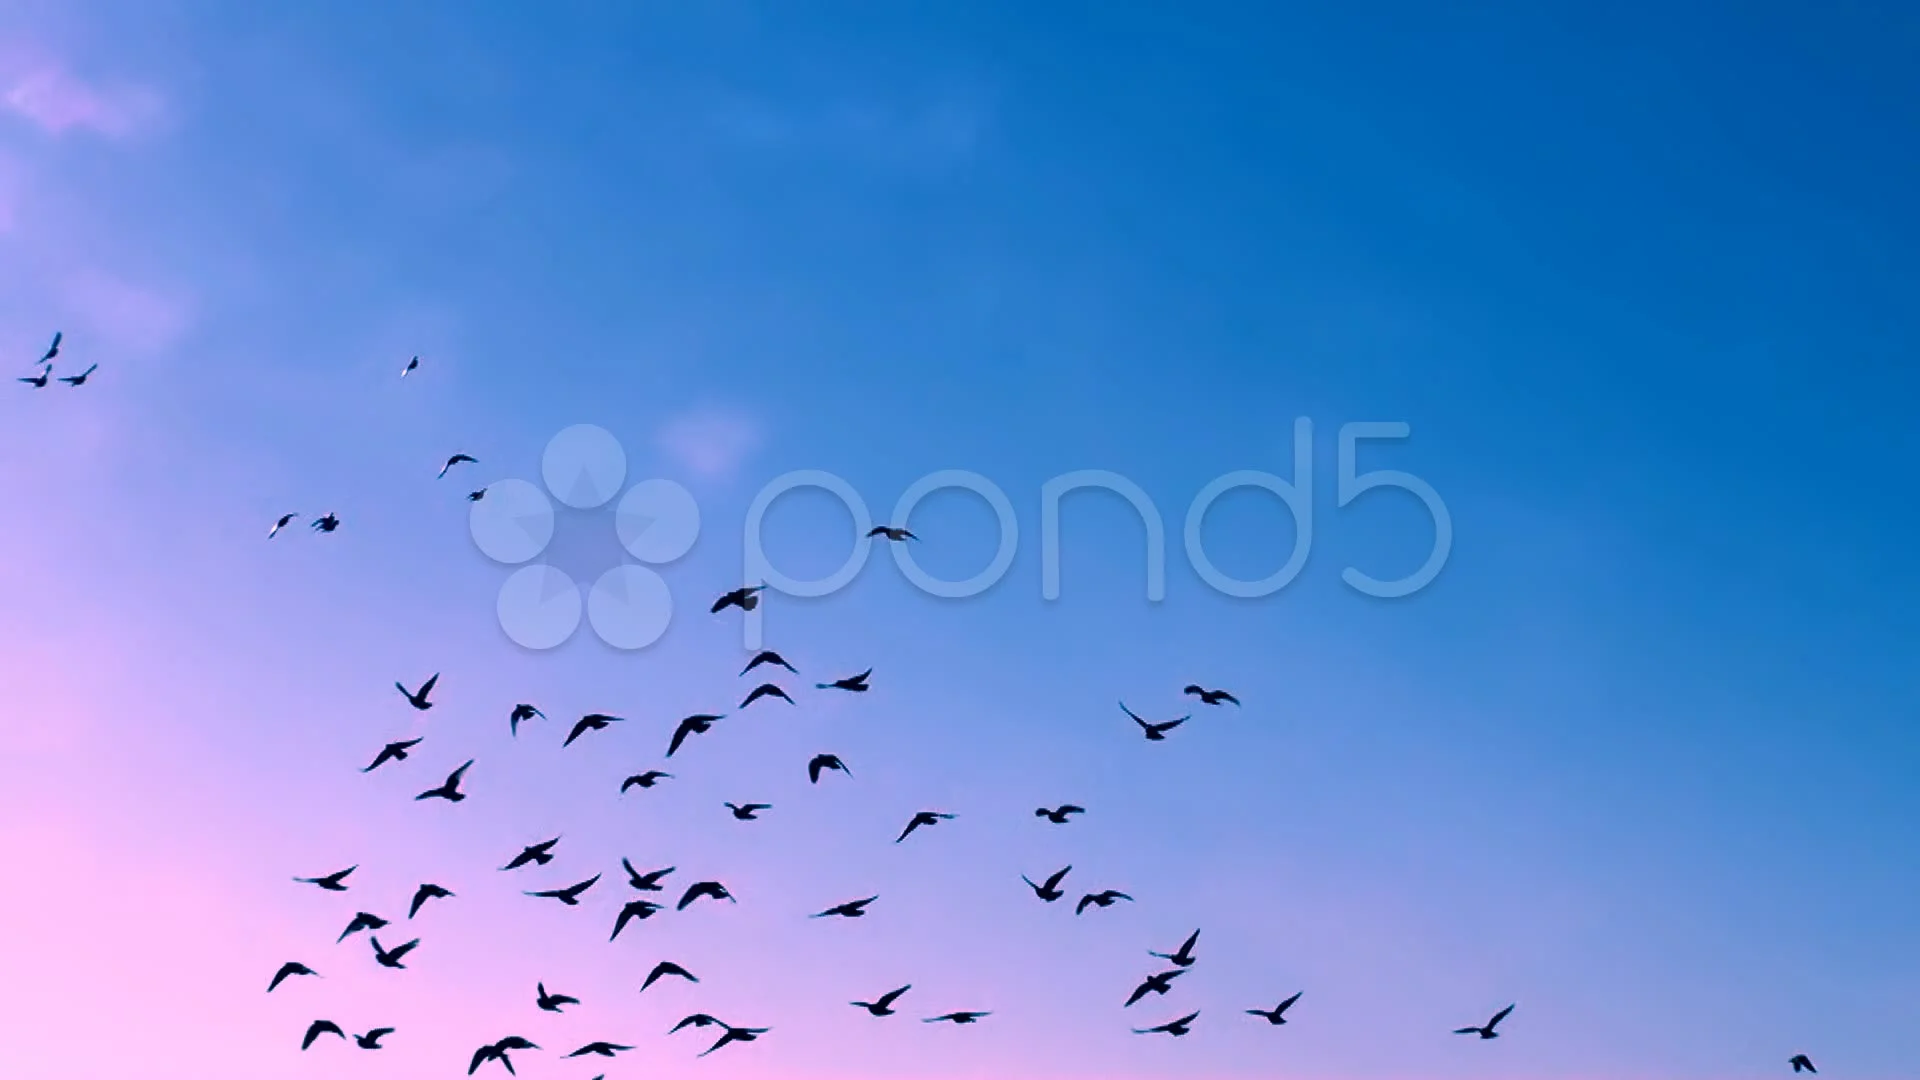 Bầy chim bay là một trong những cảnh tượng ngoạn mục nhất của thiên nhiên. Những con chim đang bay lượn trên trời và tạo hình những hình khối độc đáo sẽ khiến bạn cảm thấy thích thú và hứng khởi. Hãy cùng nhau khám phá thế giới bằng những bức ảnh đẹp về bầy chim bay!